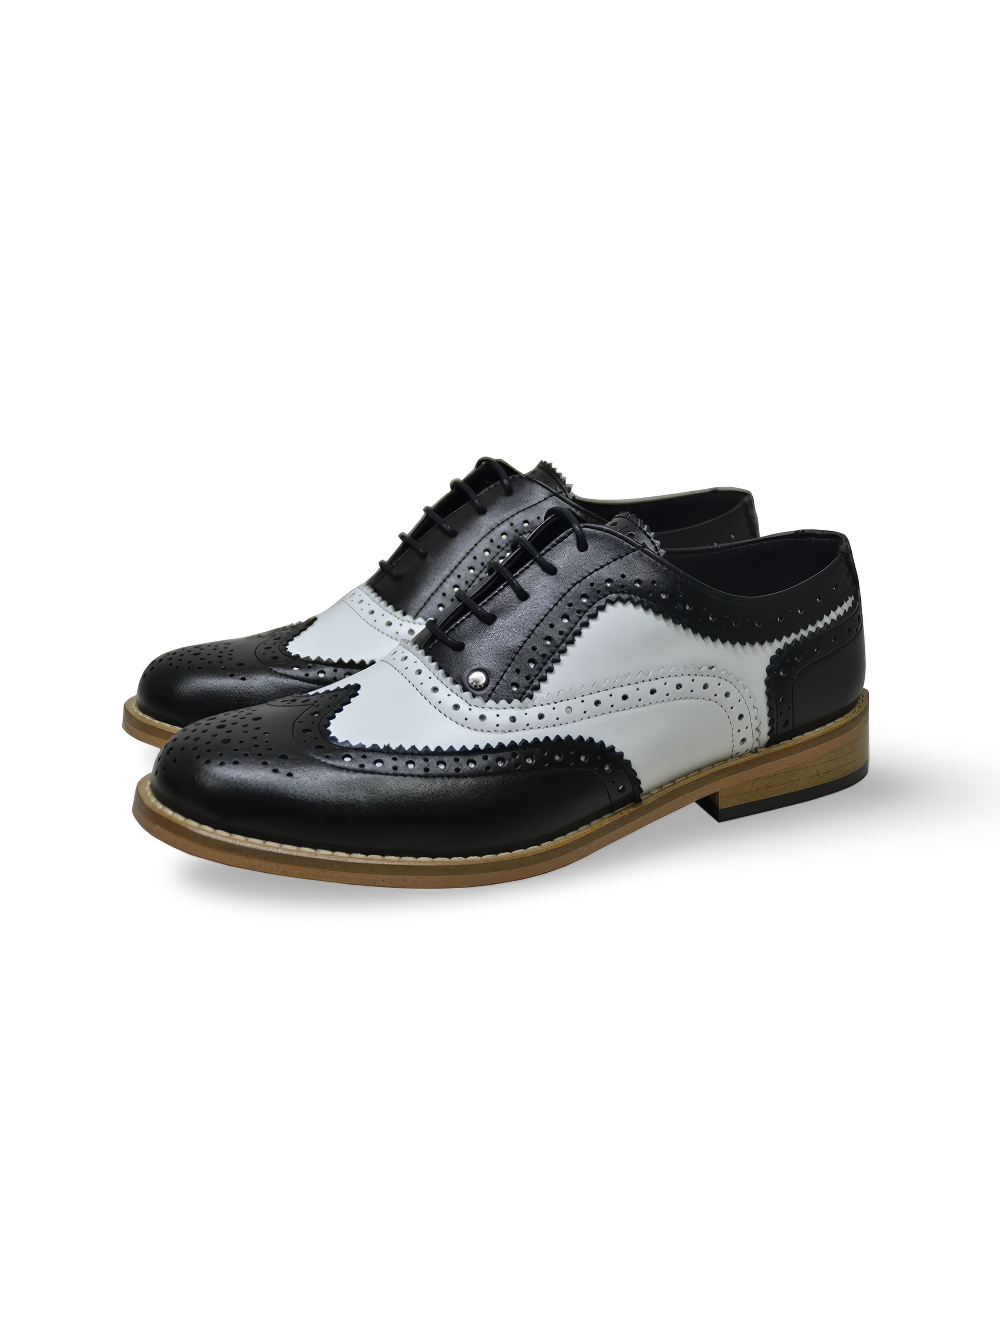 Zapatos de vestir Oxford Neolite en blanco y negro para hombre